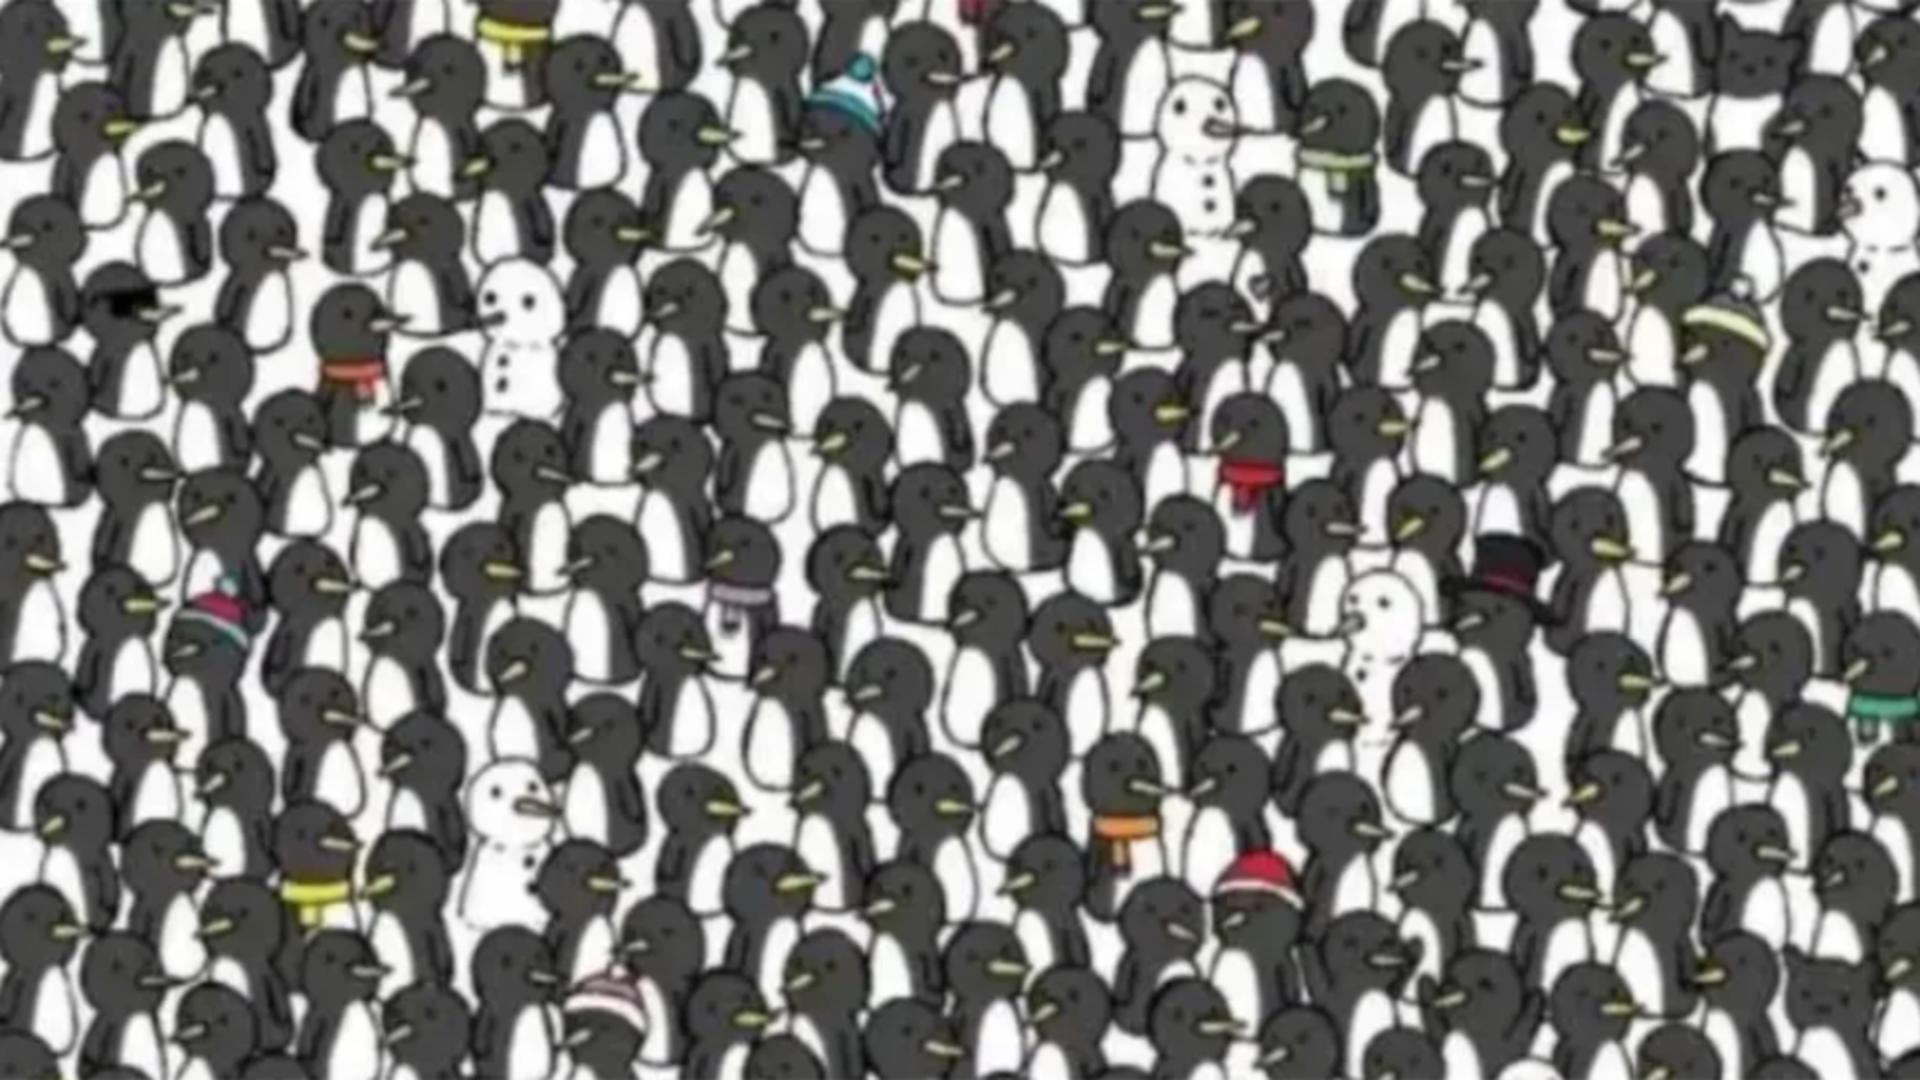 Testul detectivului suprem: Poți să găsești cele două pisici ascunse în mulțimea de pinguini?